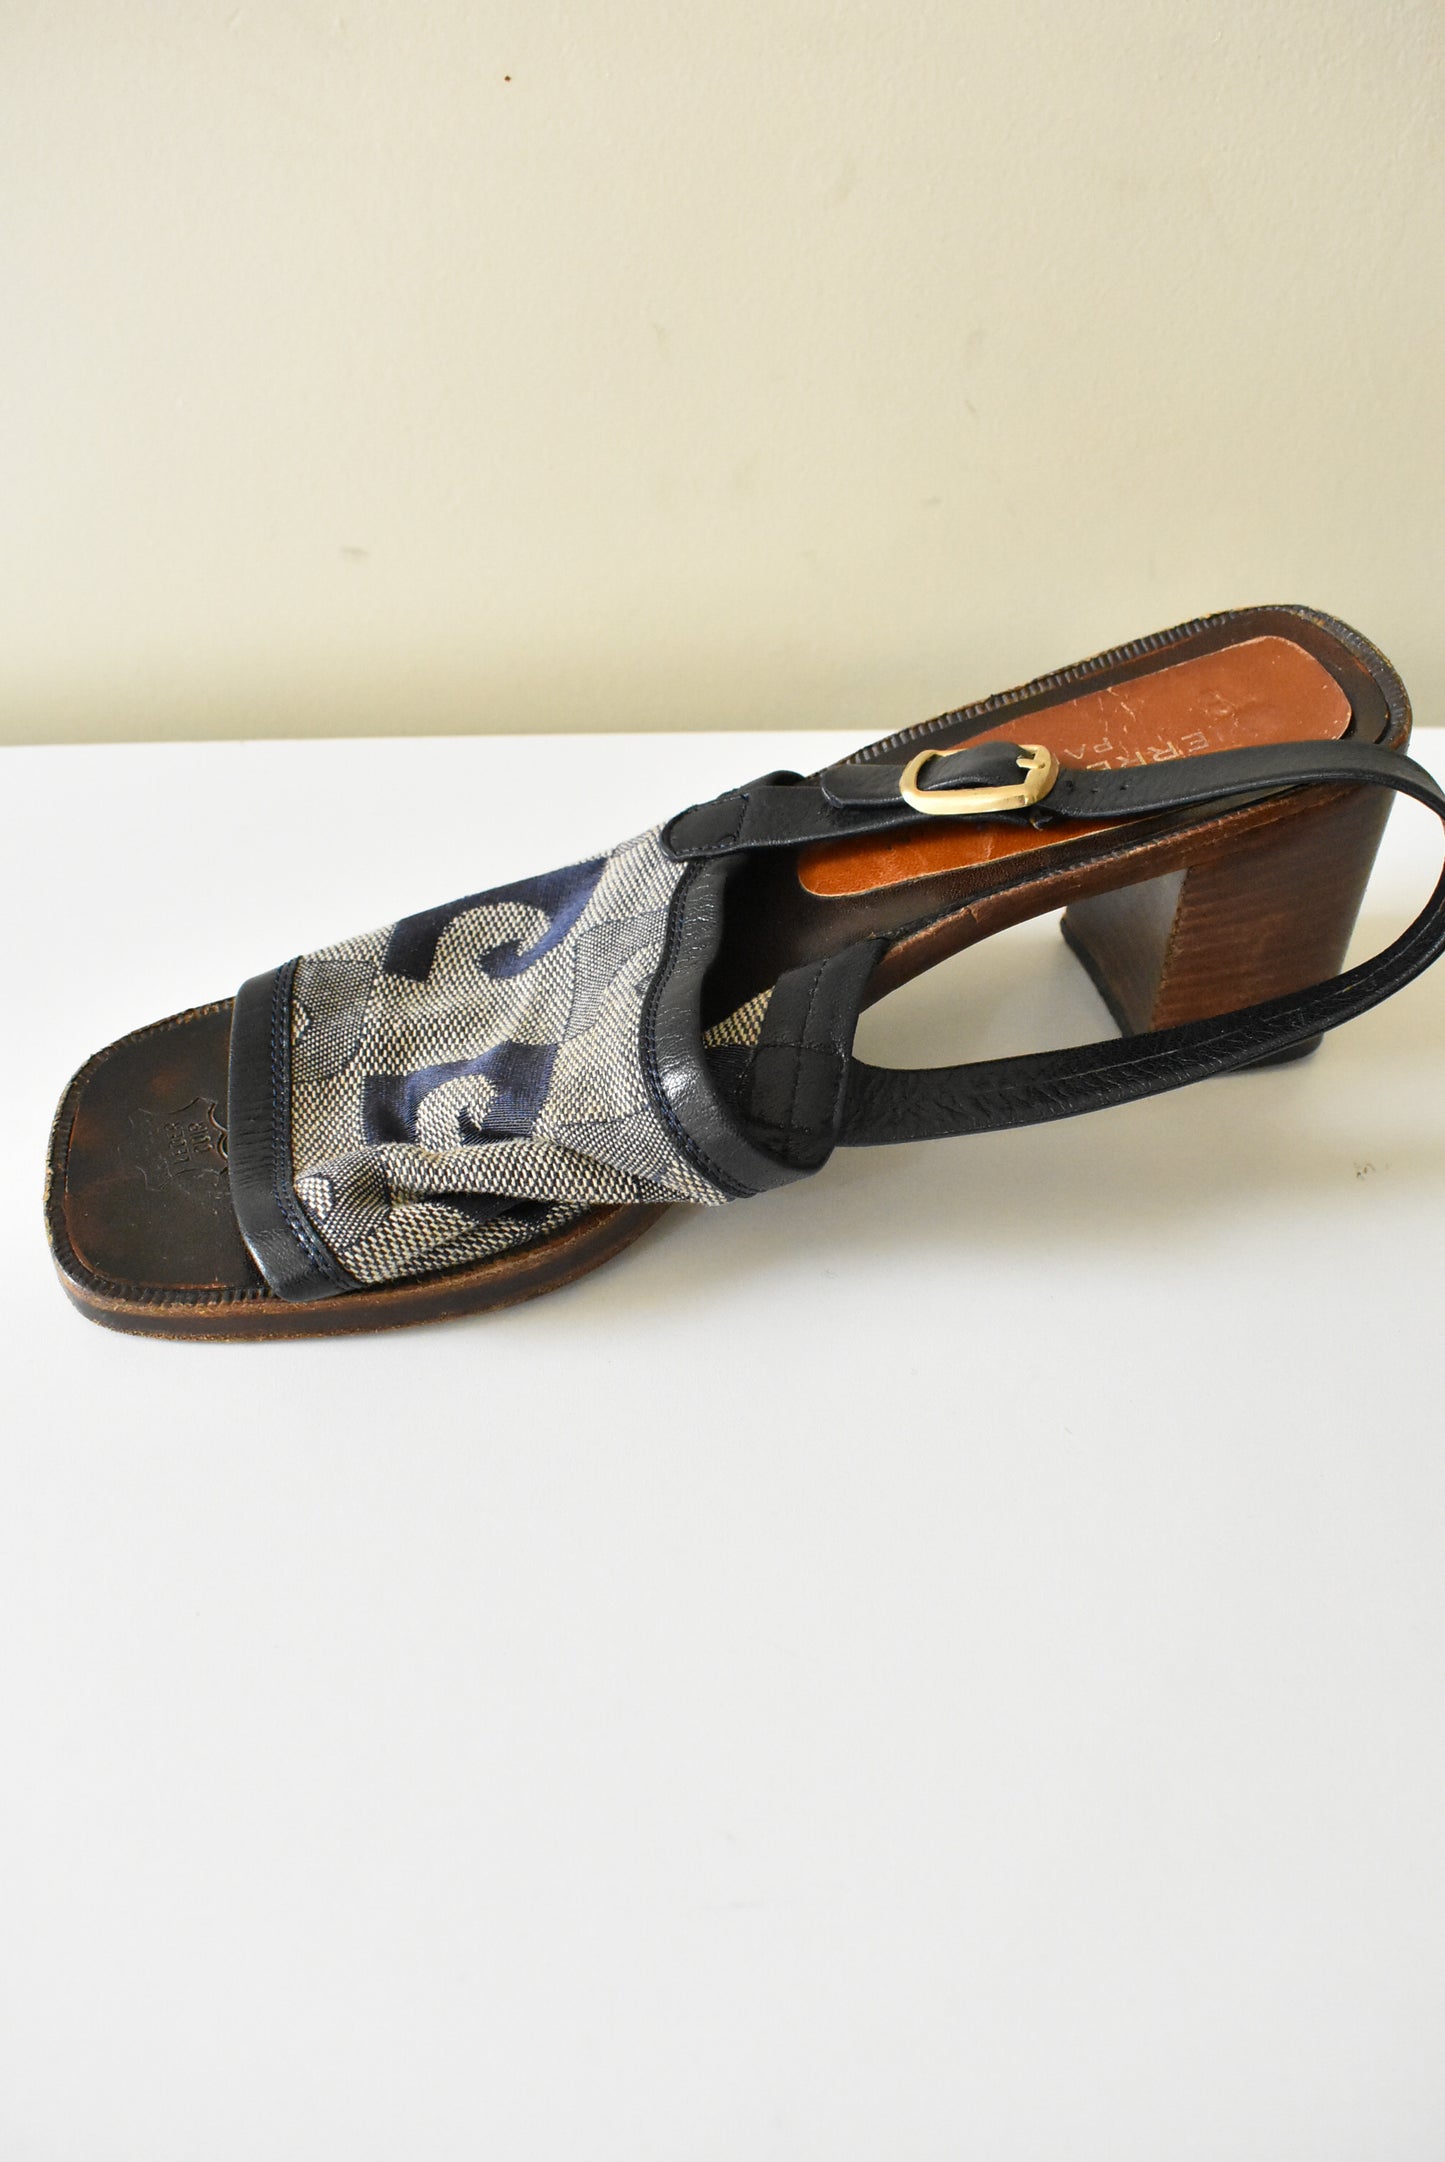 Vintage Pierre Cardin sandals, 8